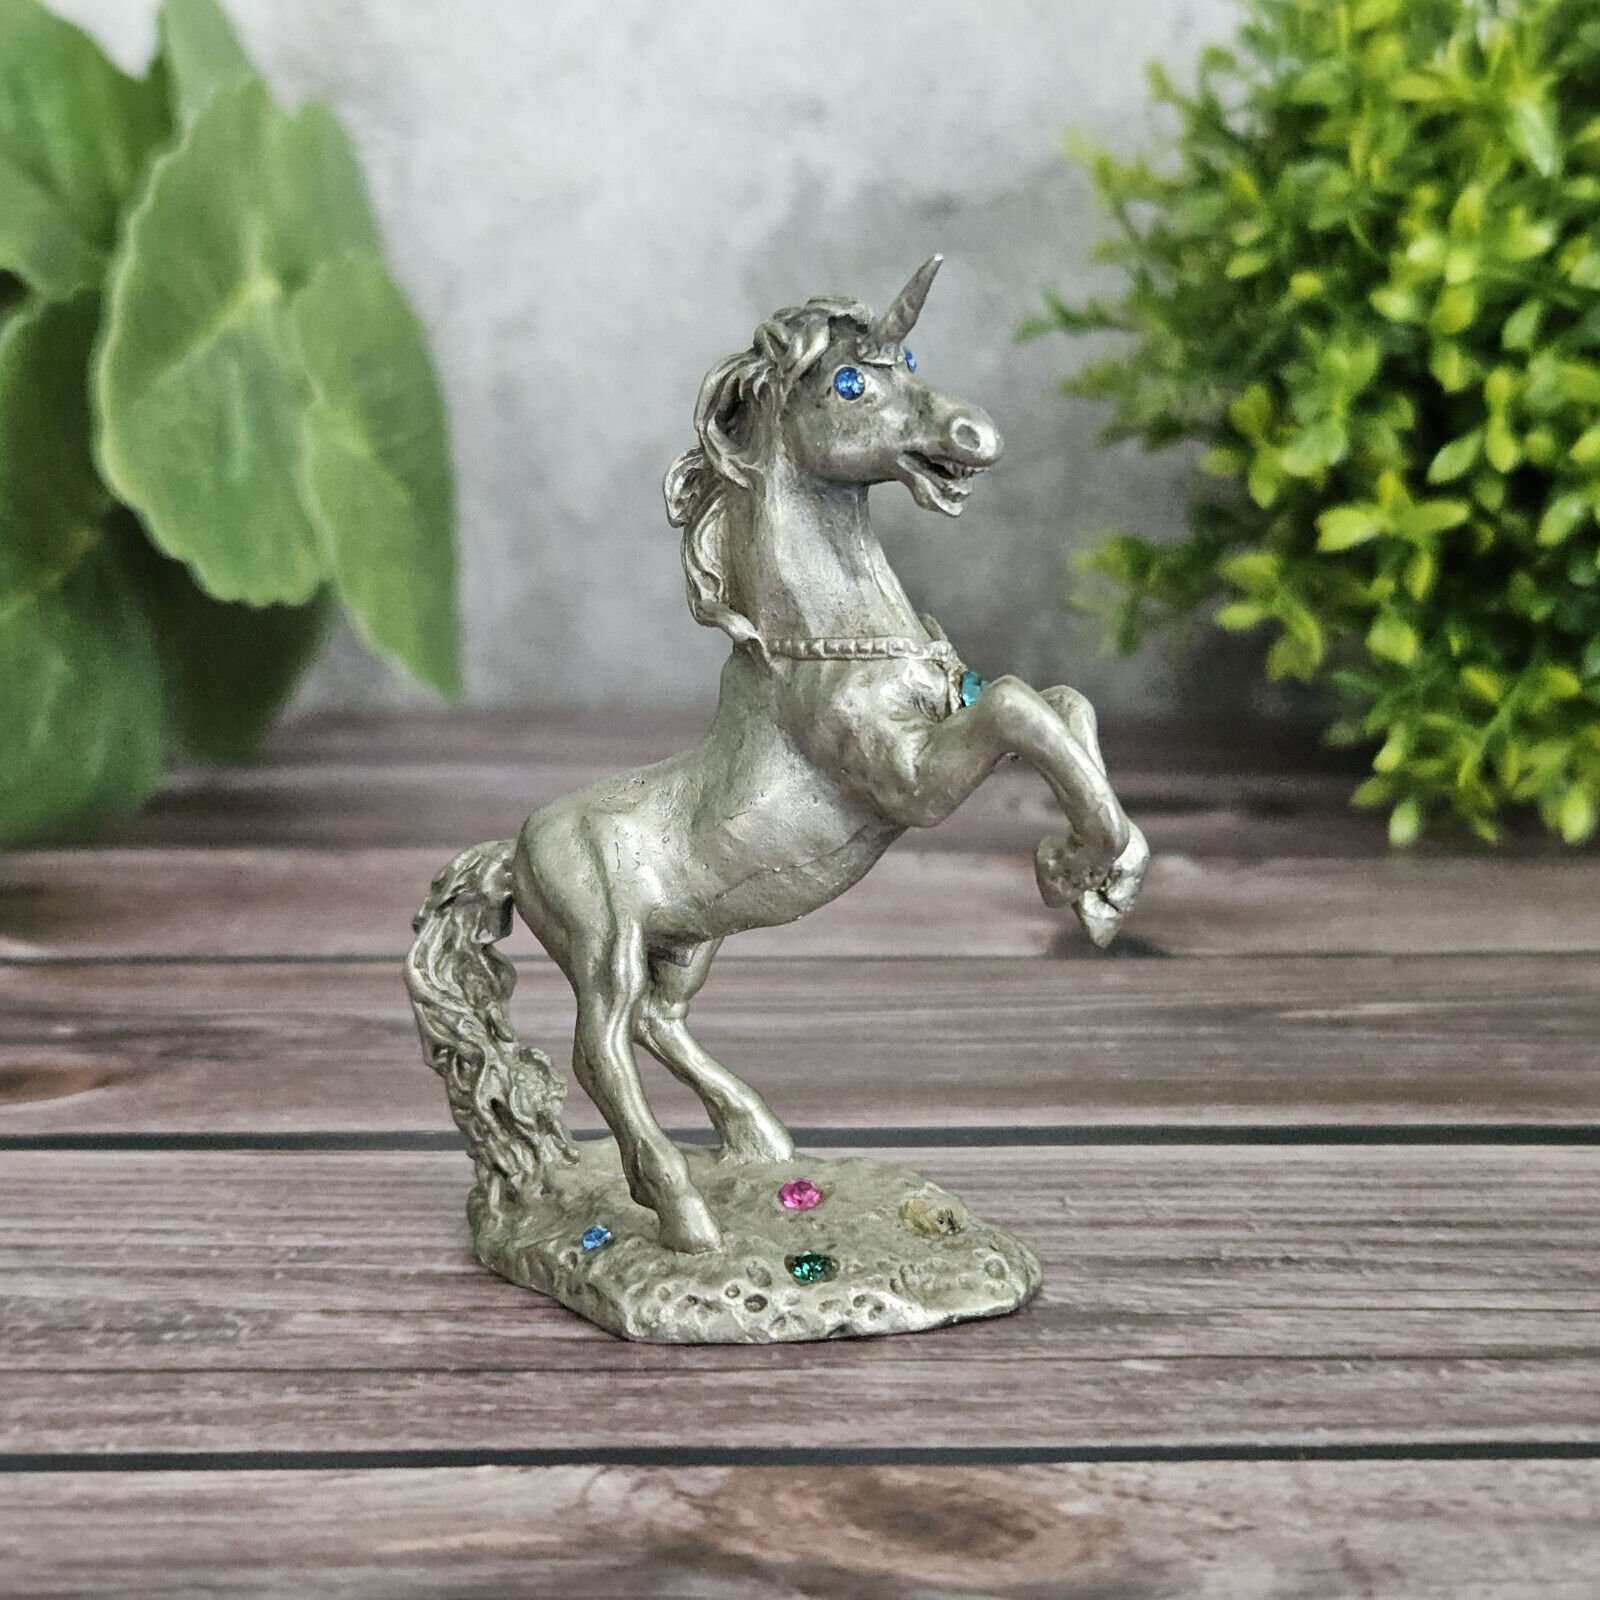 Vintage Pewter Unicorn Figurine with Rhinestone Blue Eyes and Pendant